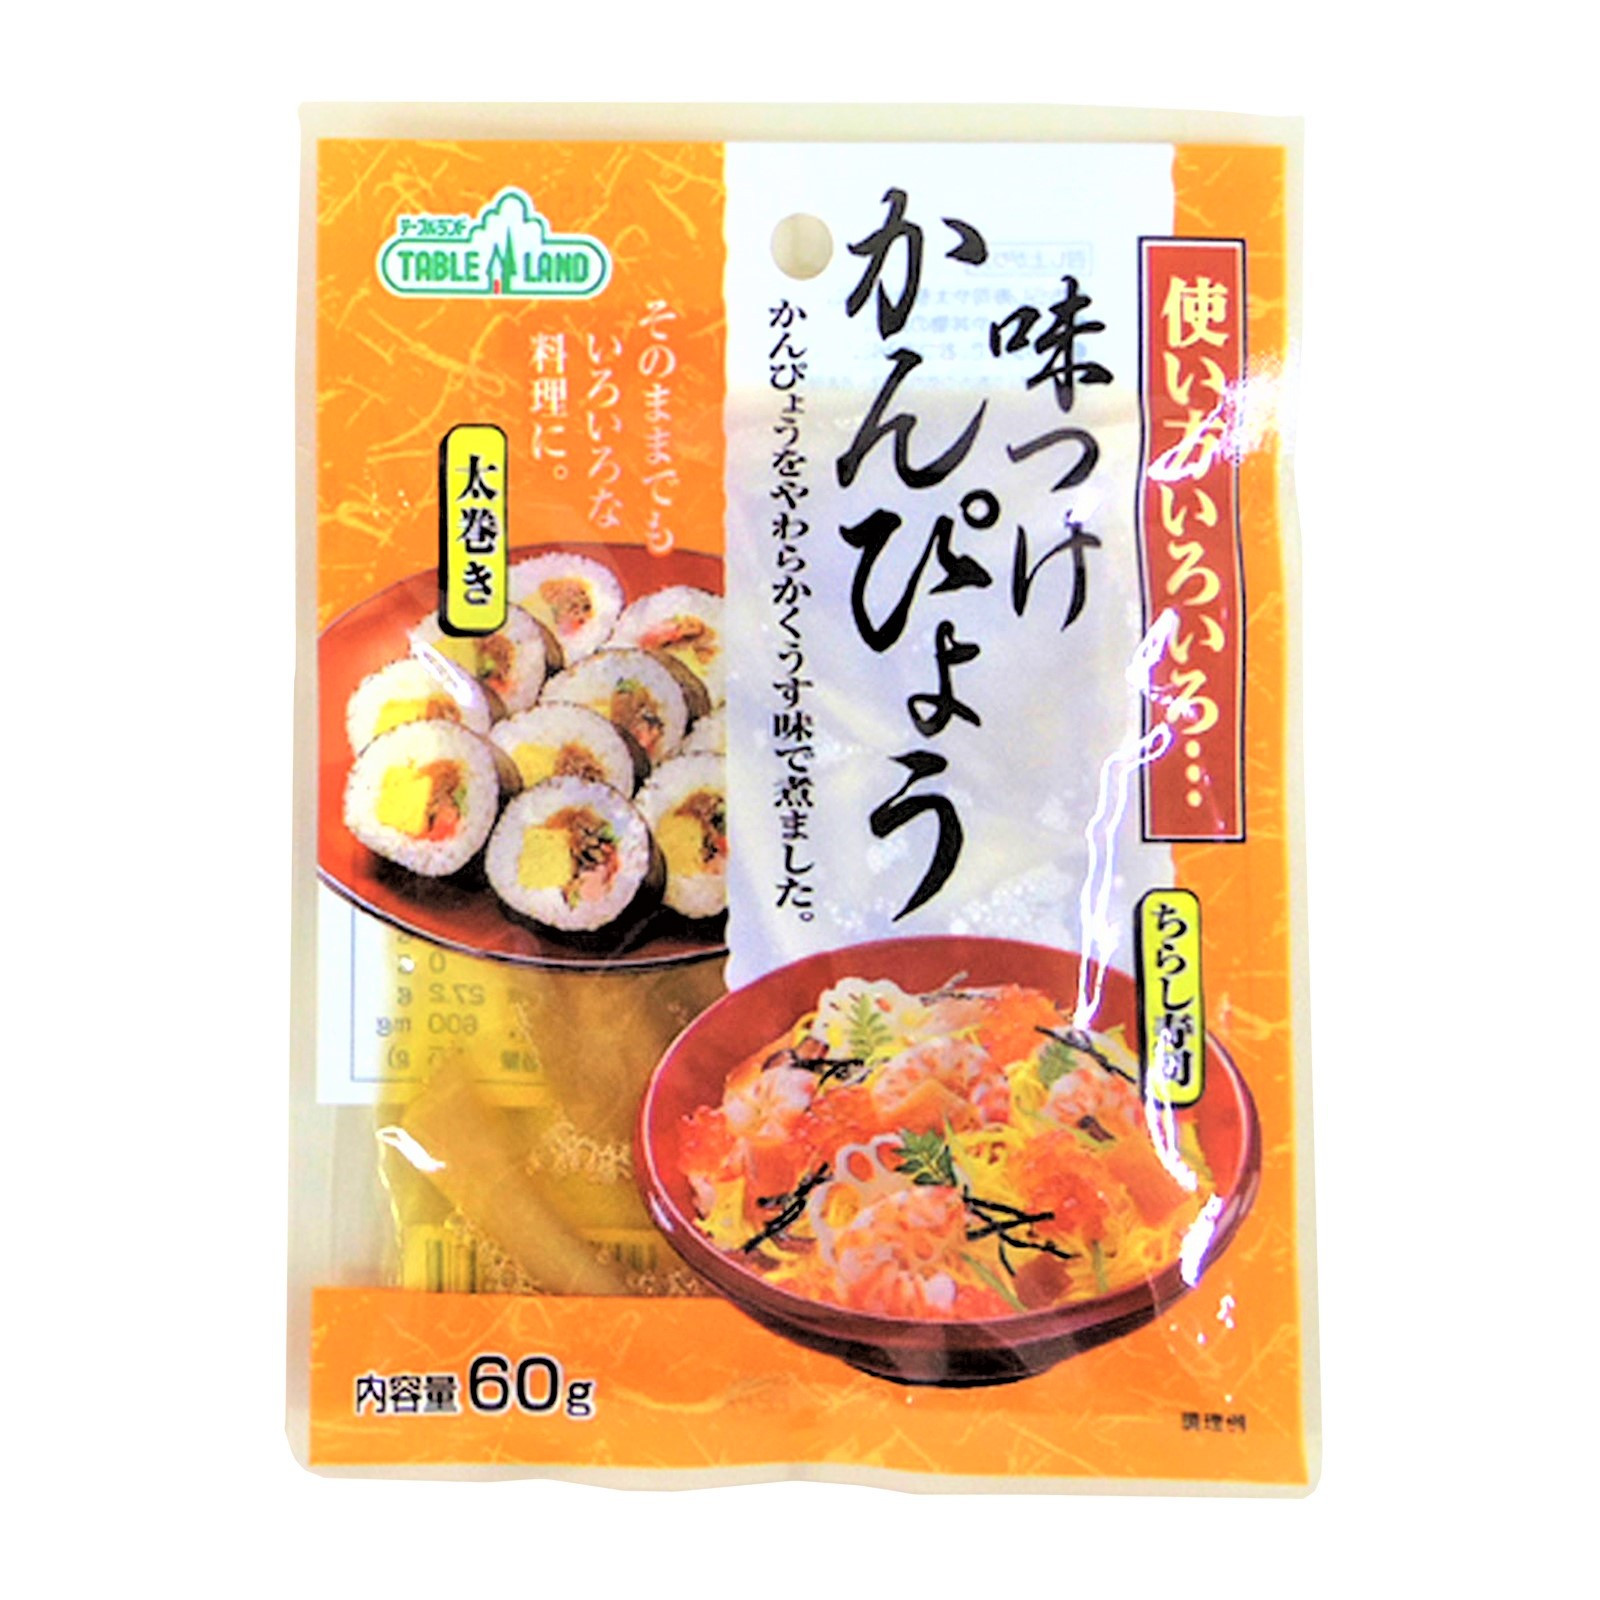 KANPYO, Zucca marinate per sushi 60g, Misuzu